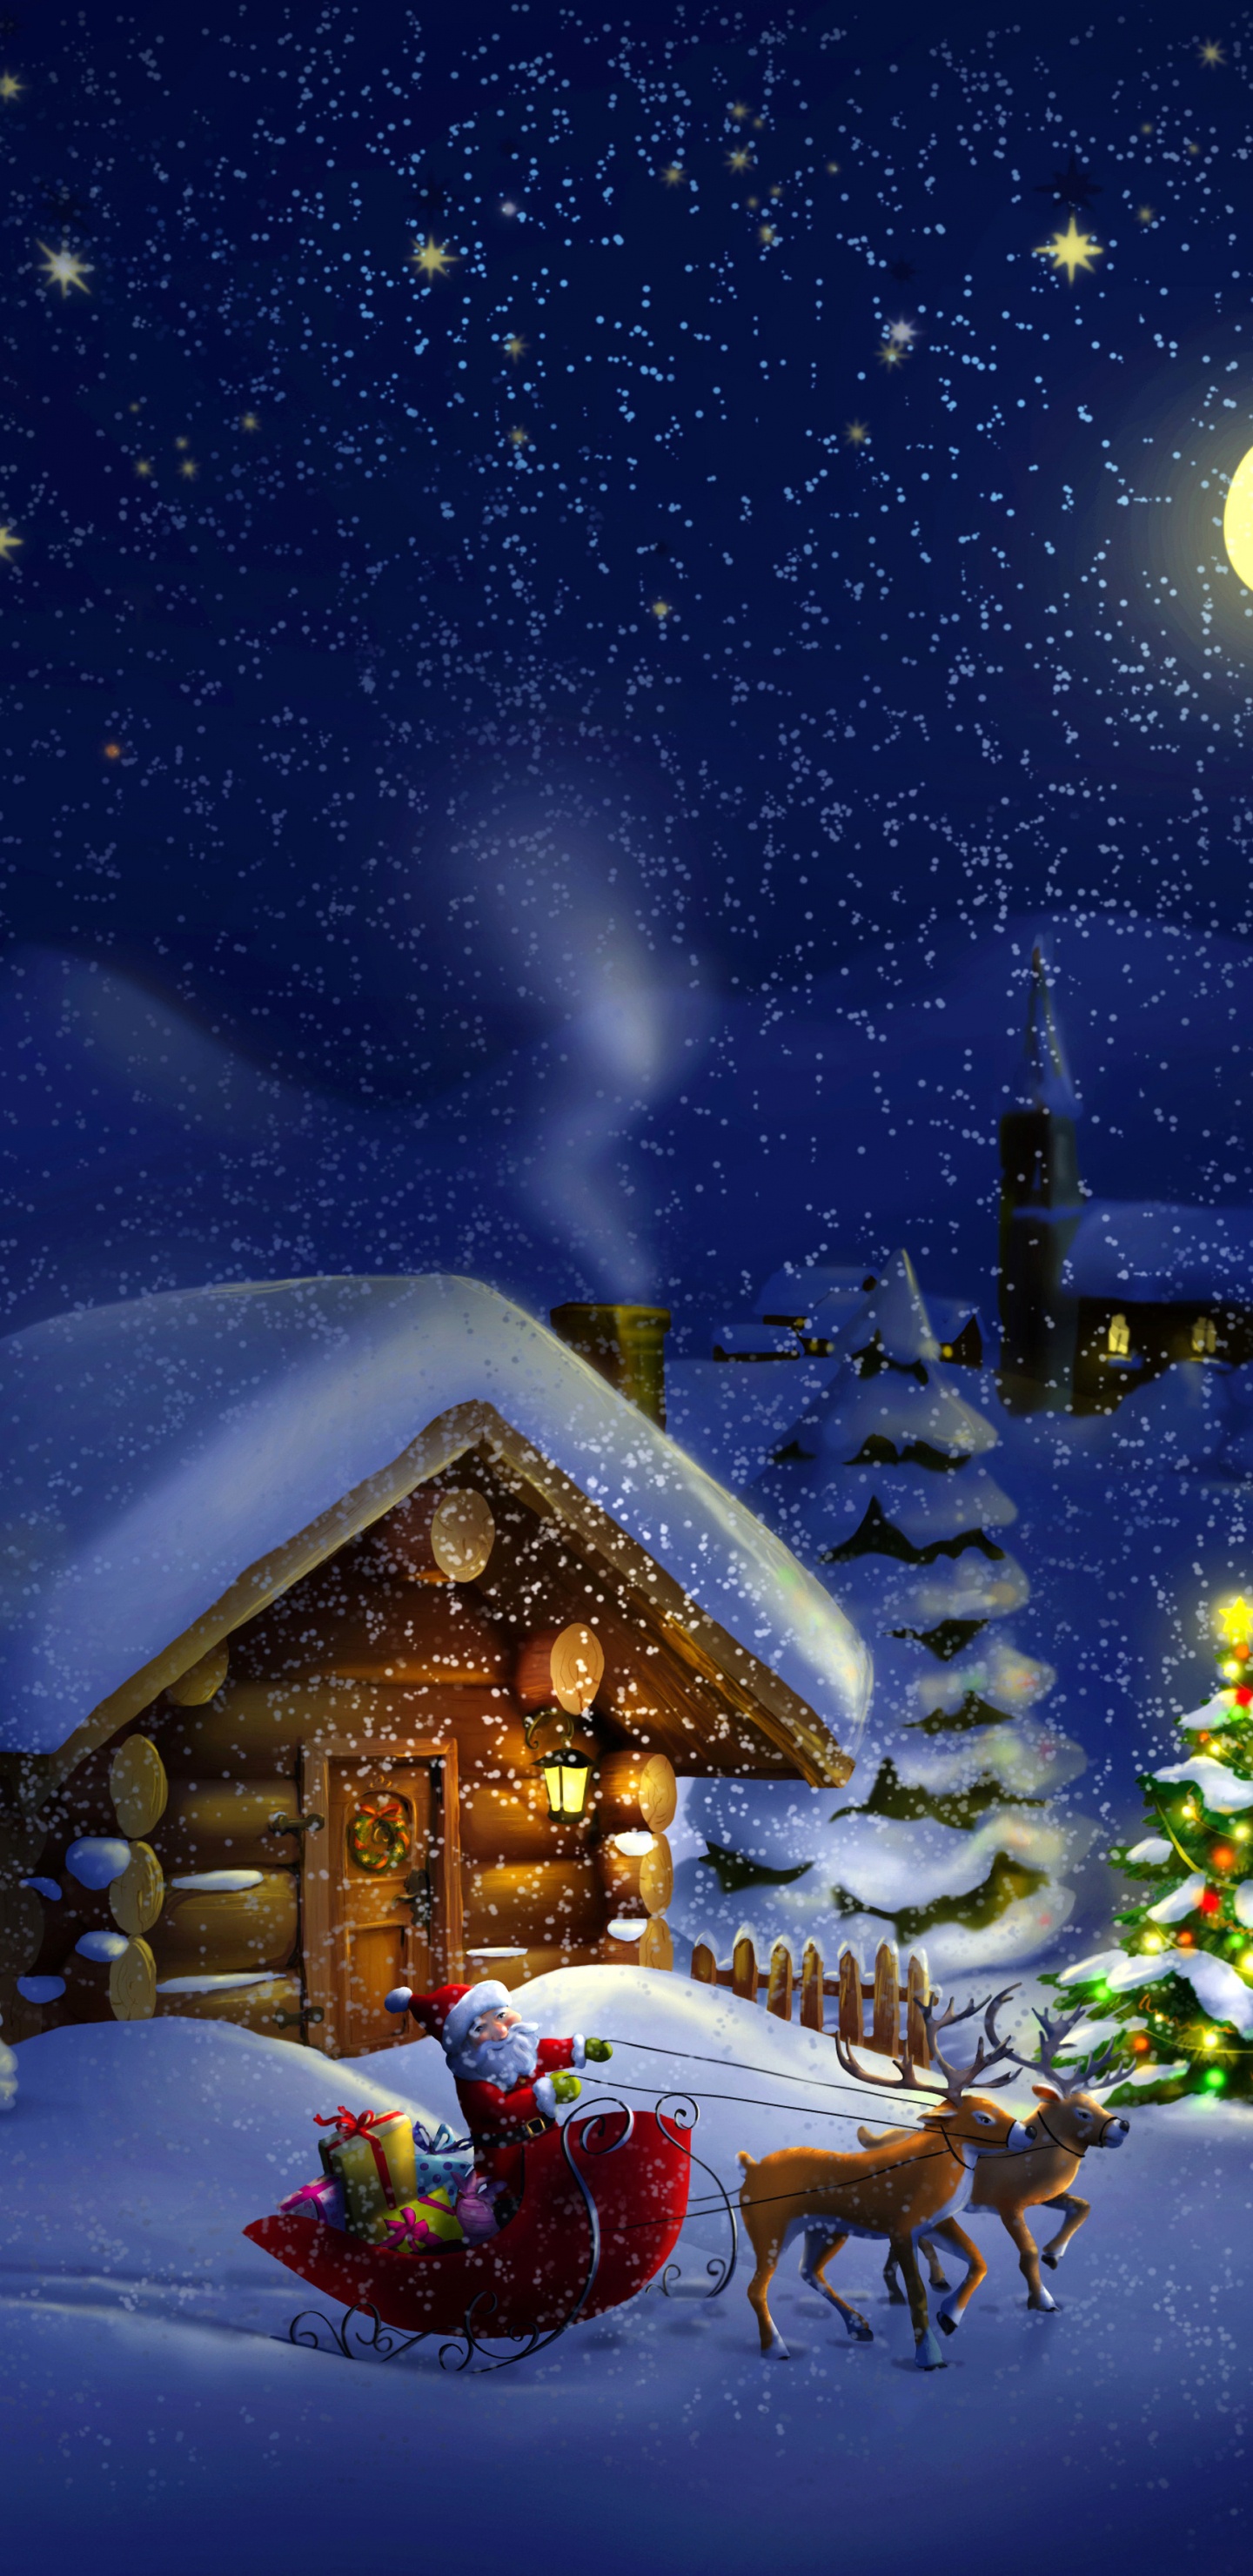 Le Jour De Noël, Santa Claus, Hiver, Neige, Nuit. Wallpaper in 1440x2960 Resolution